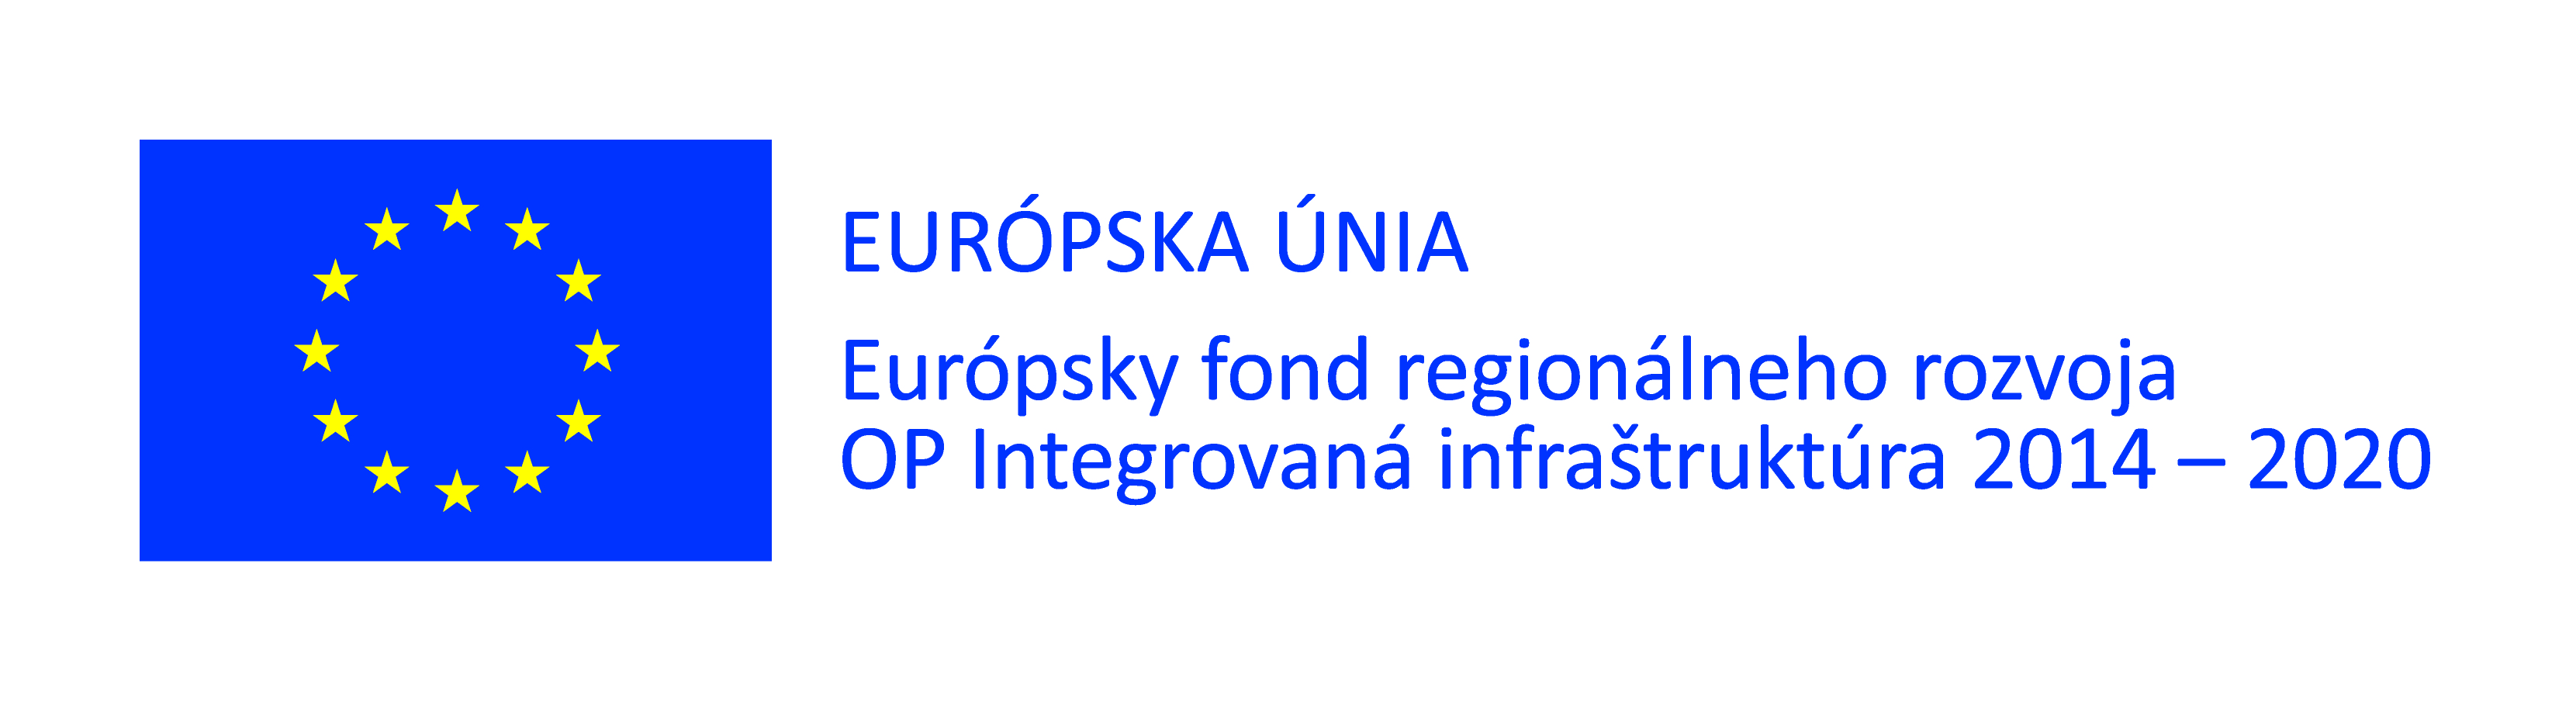 logo: Európsky fond regionálneho rozvoja OP Integrovaná infraštruktúra 2014 - 2020